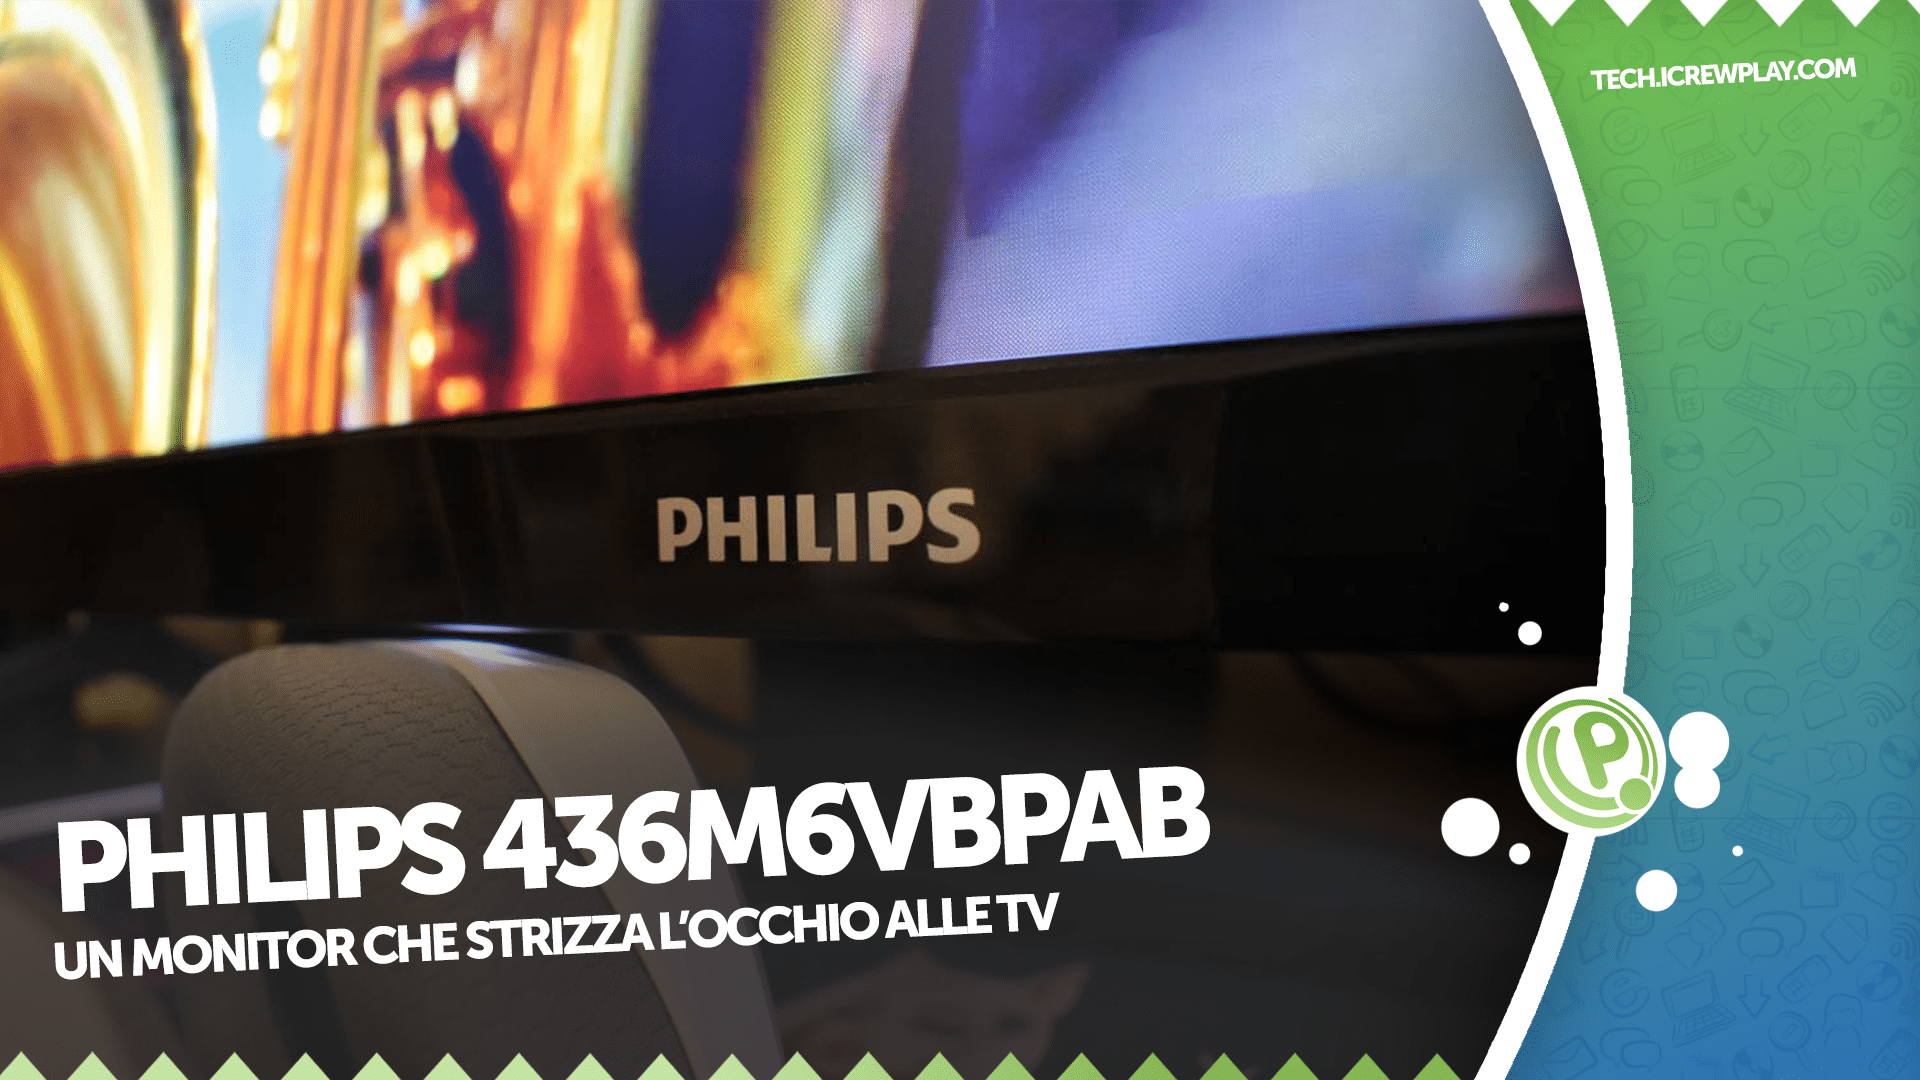 Philips Momentum 436M6VBPAB recensione